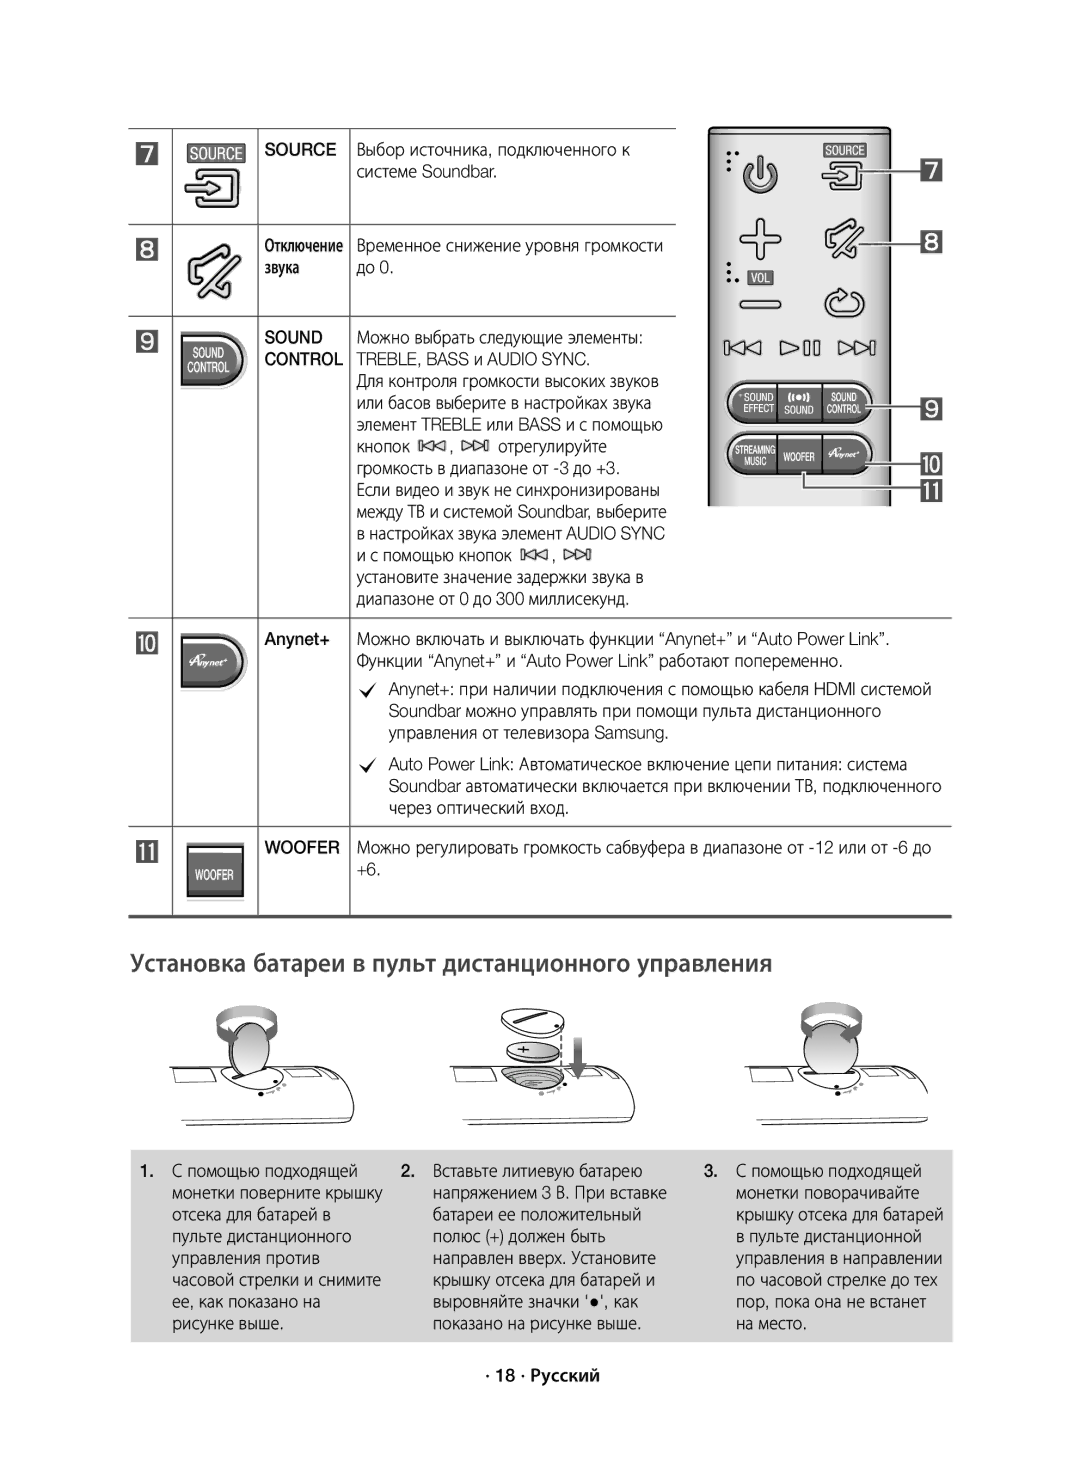 Samsung HW-J7500/RU Выбор источника, подключенного к, Временное снижение уровня громкости Звука, Через оптический вход 